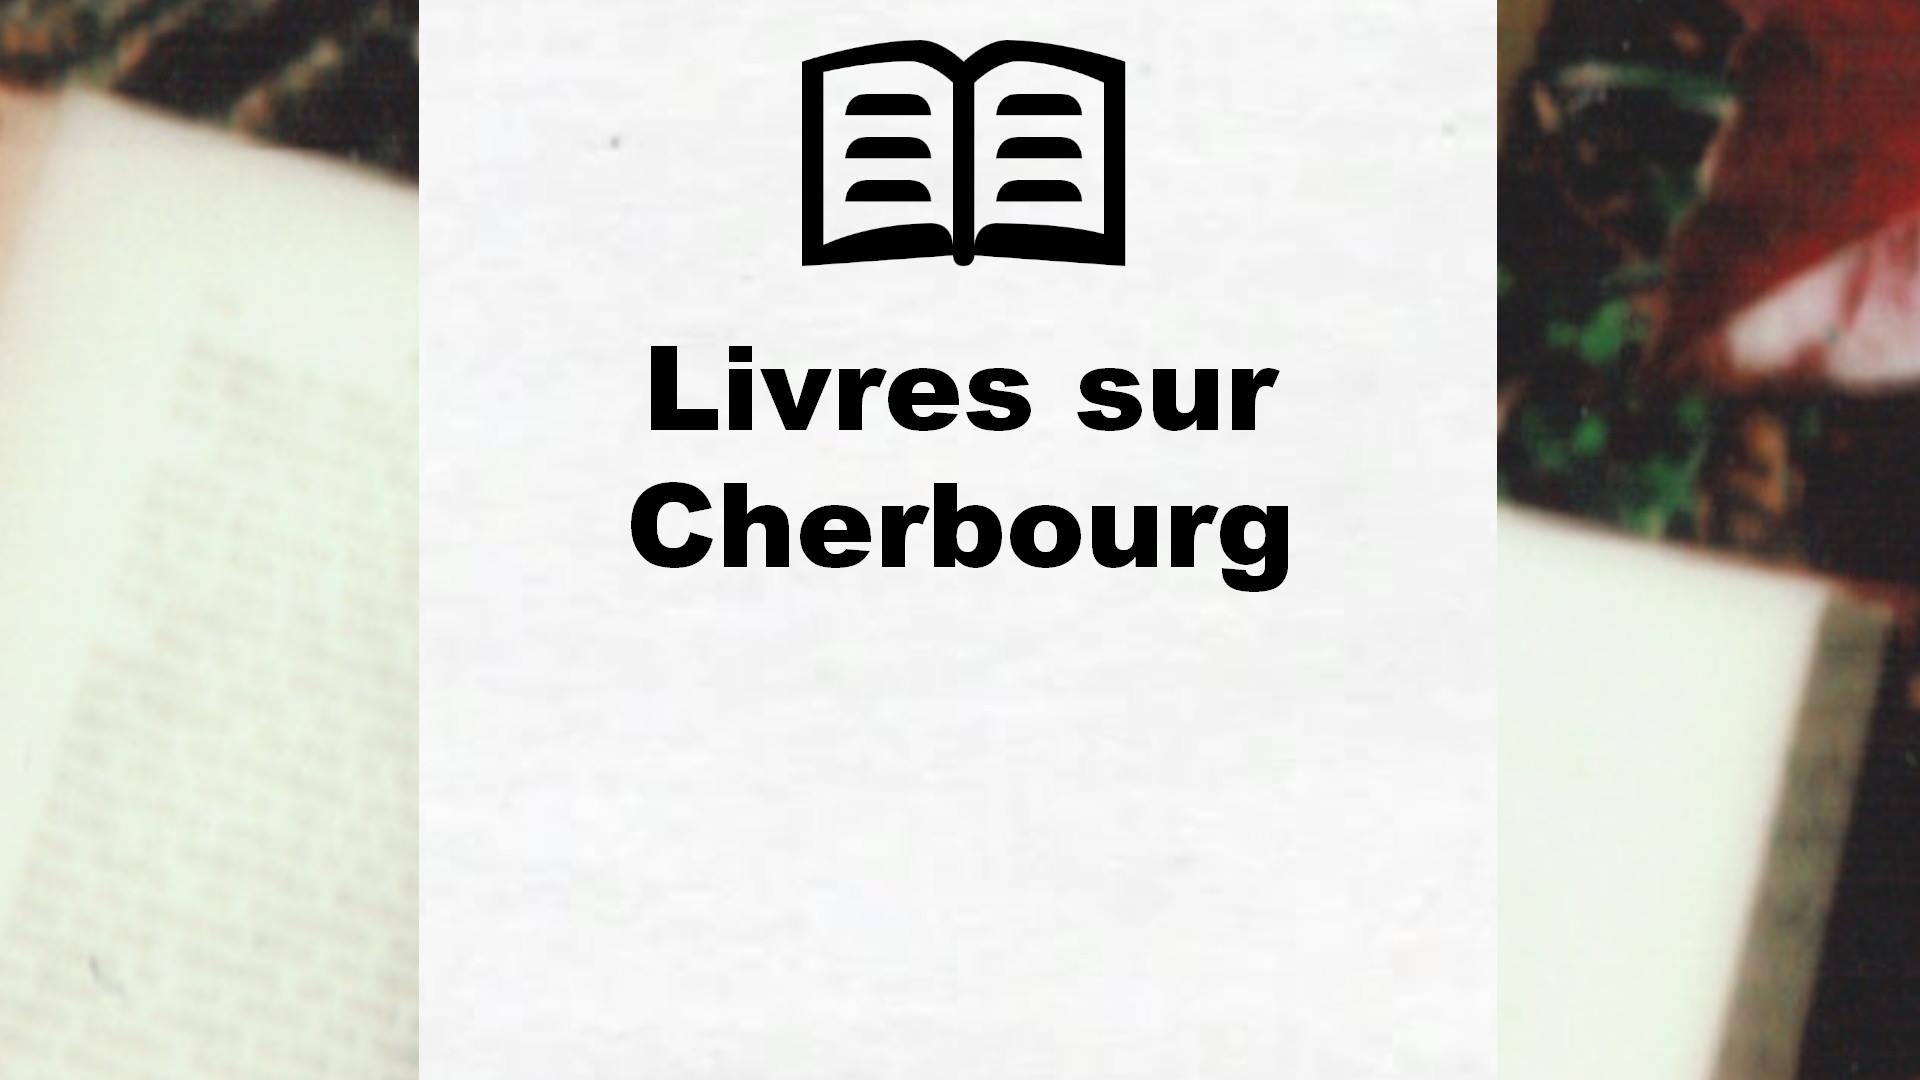 Livres sur Cherbourg